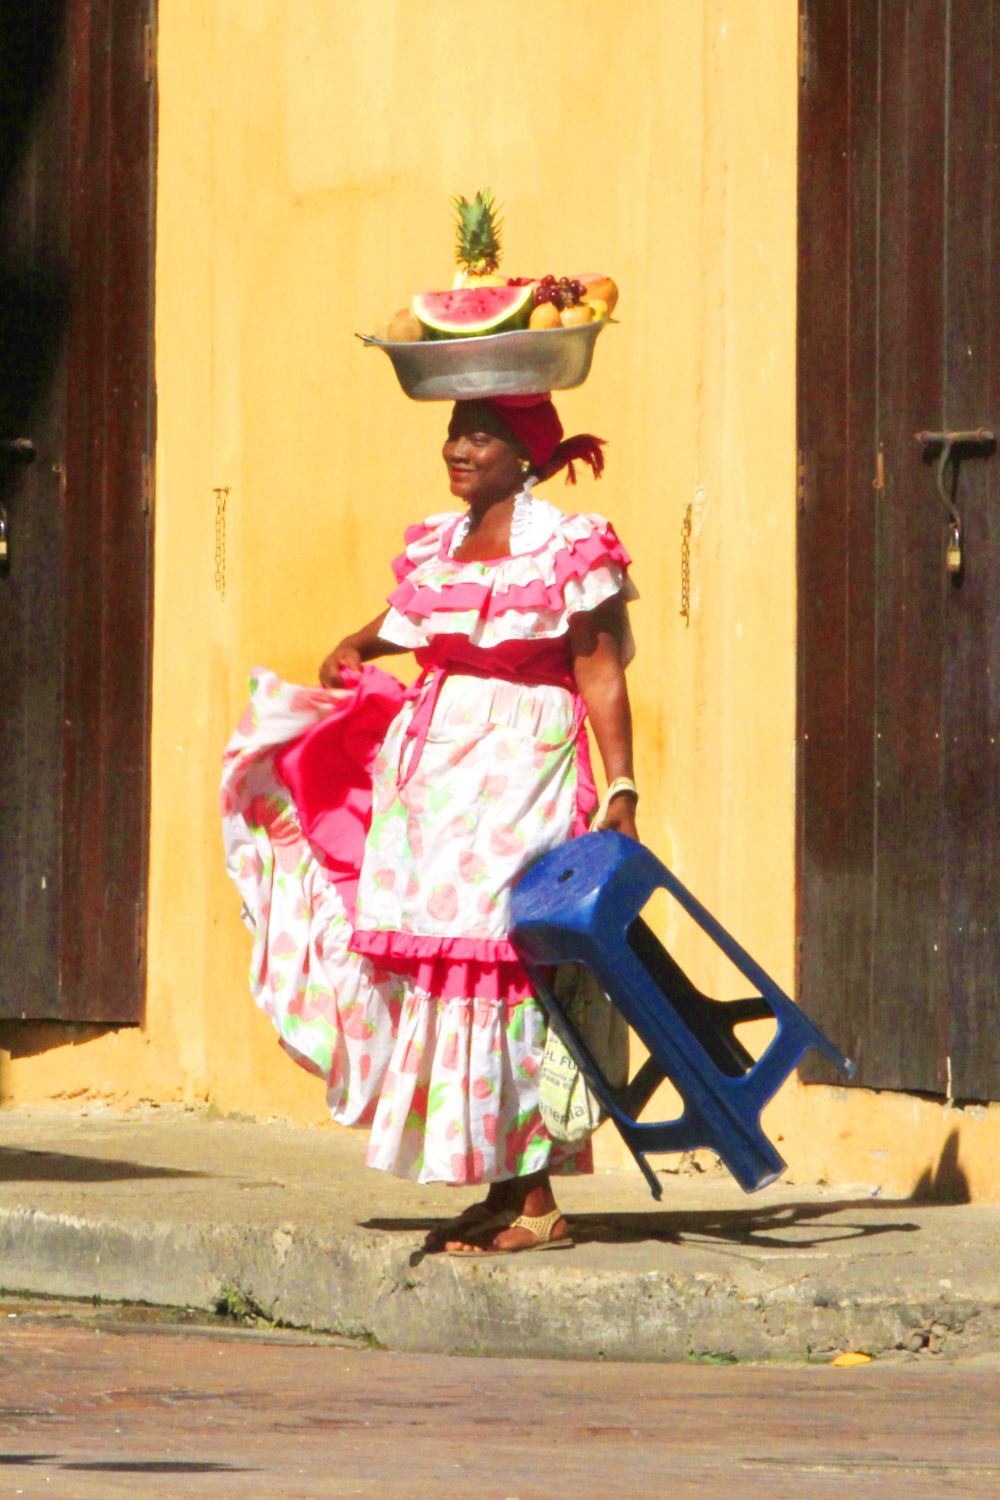 Cartagena, Columbien 2013